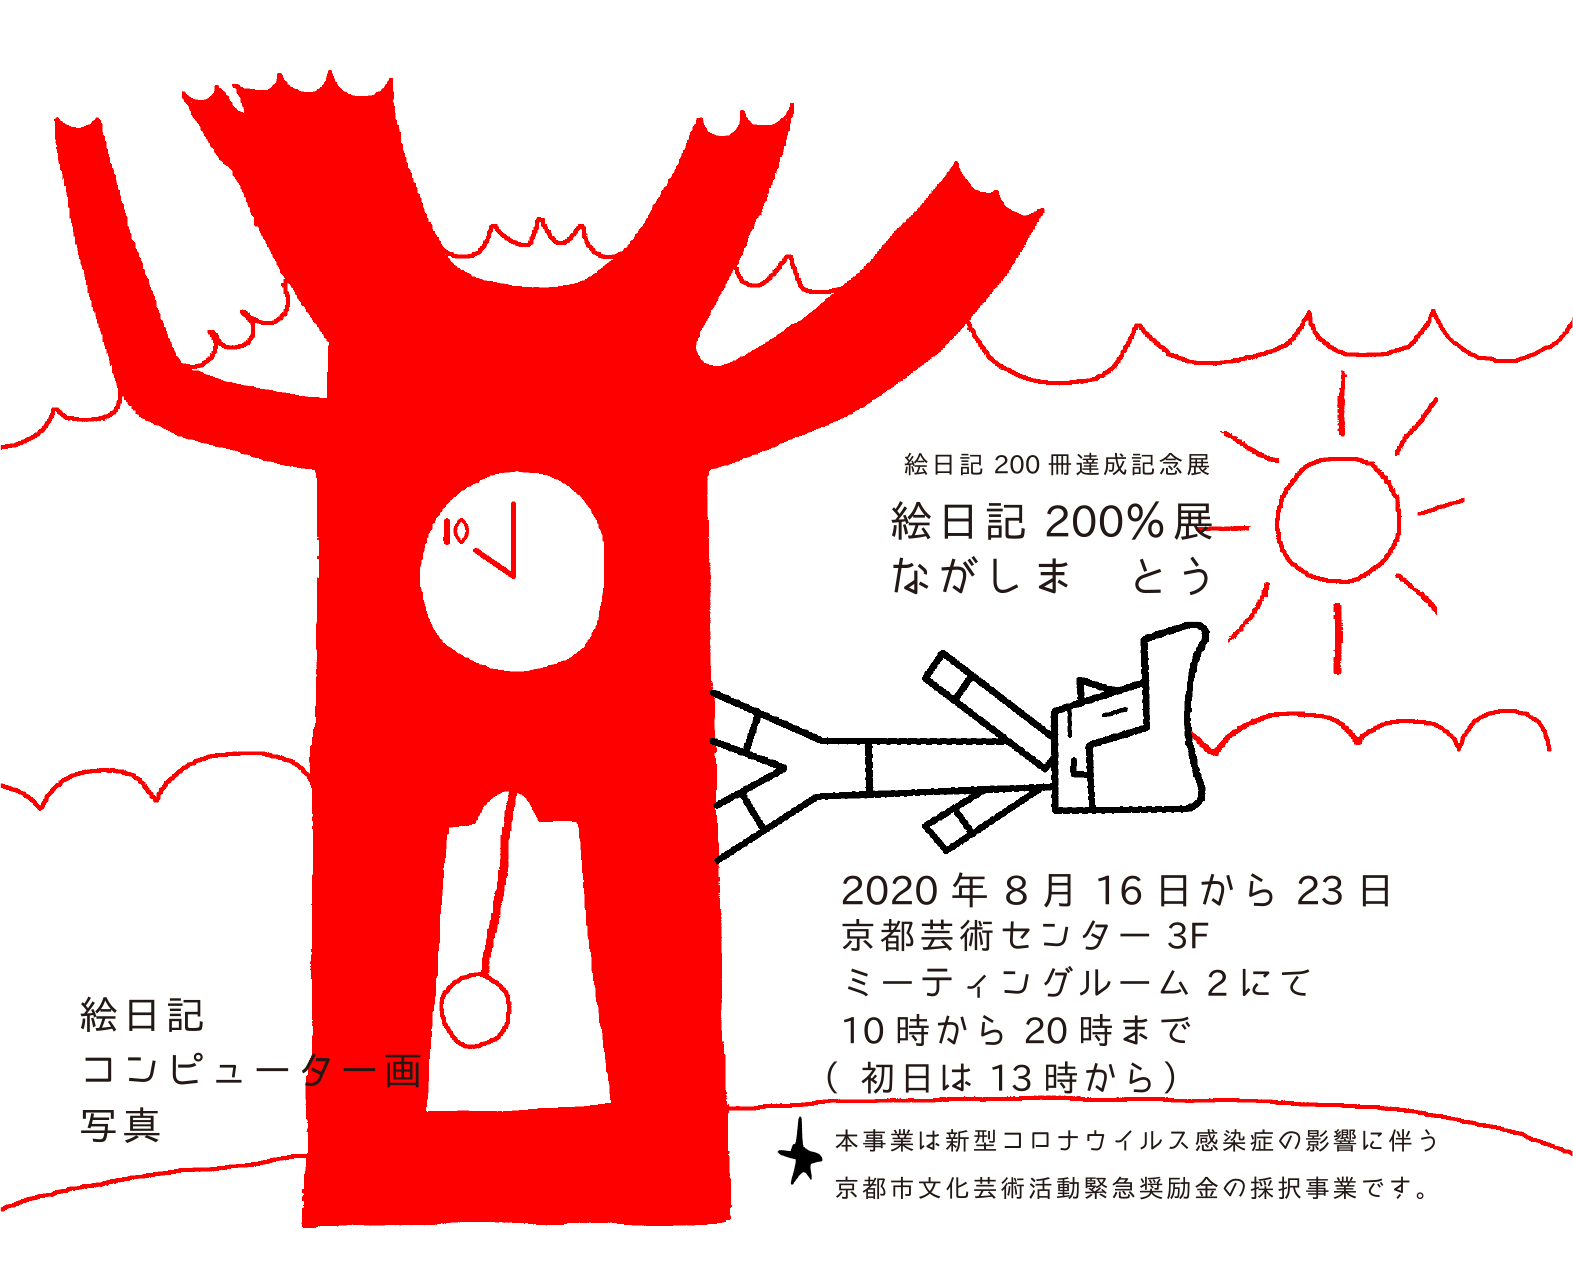 絵日記0冊達成記念展 絵日記0 展 イベント 京都文化芸術オフィシャルサイト Kyoto Art Box